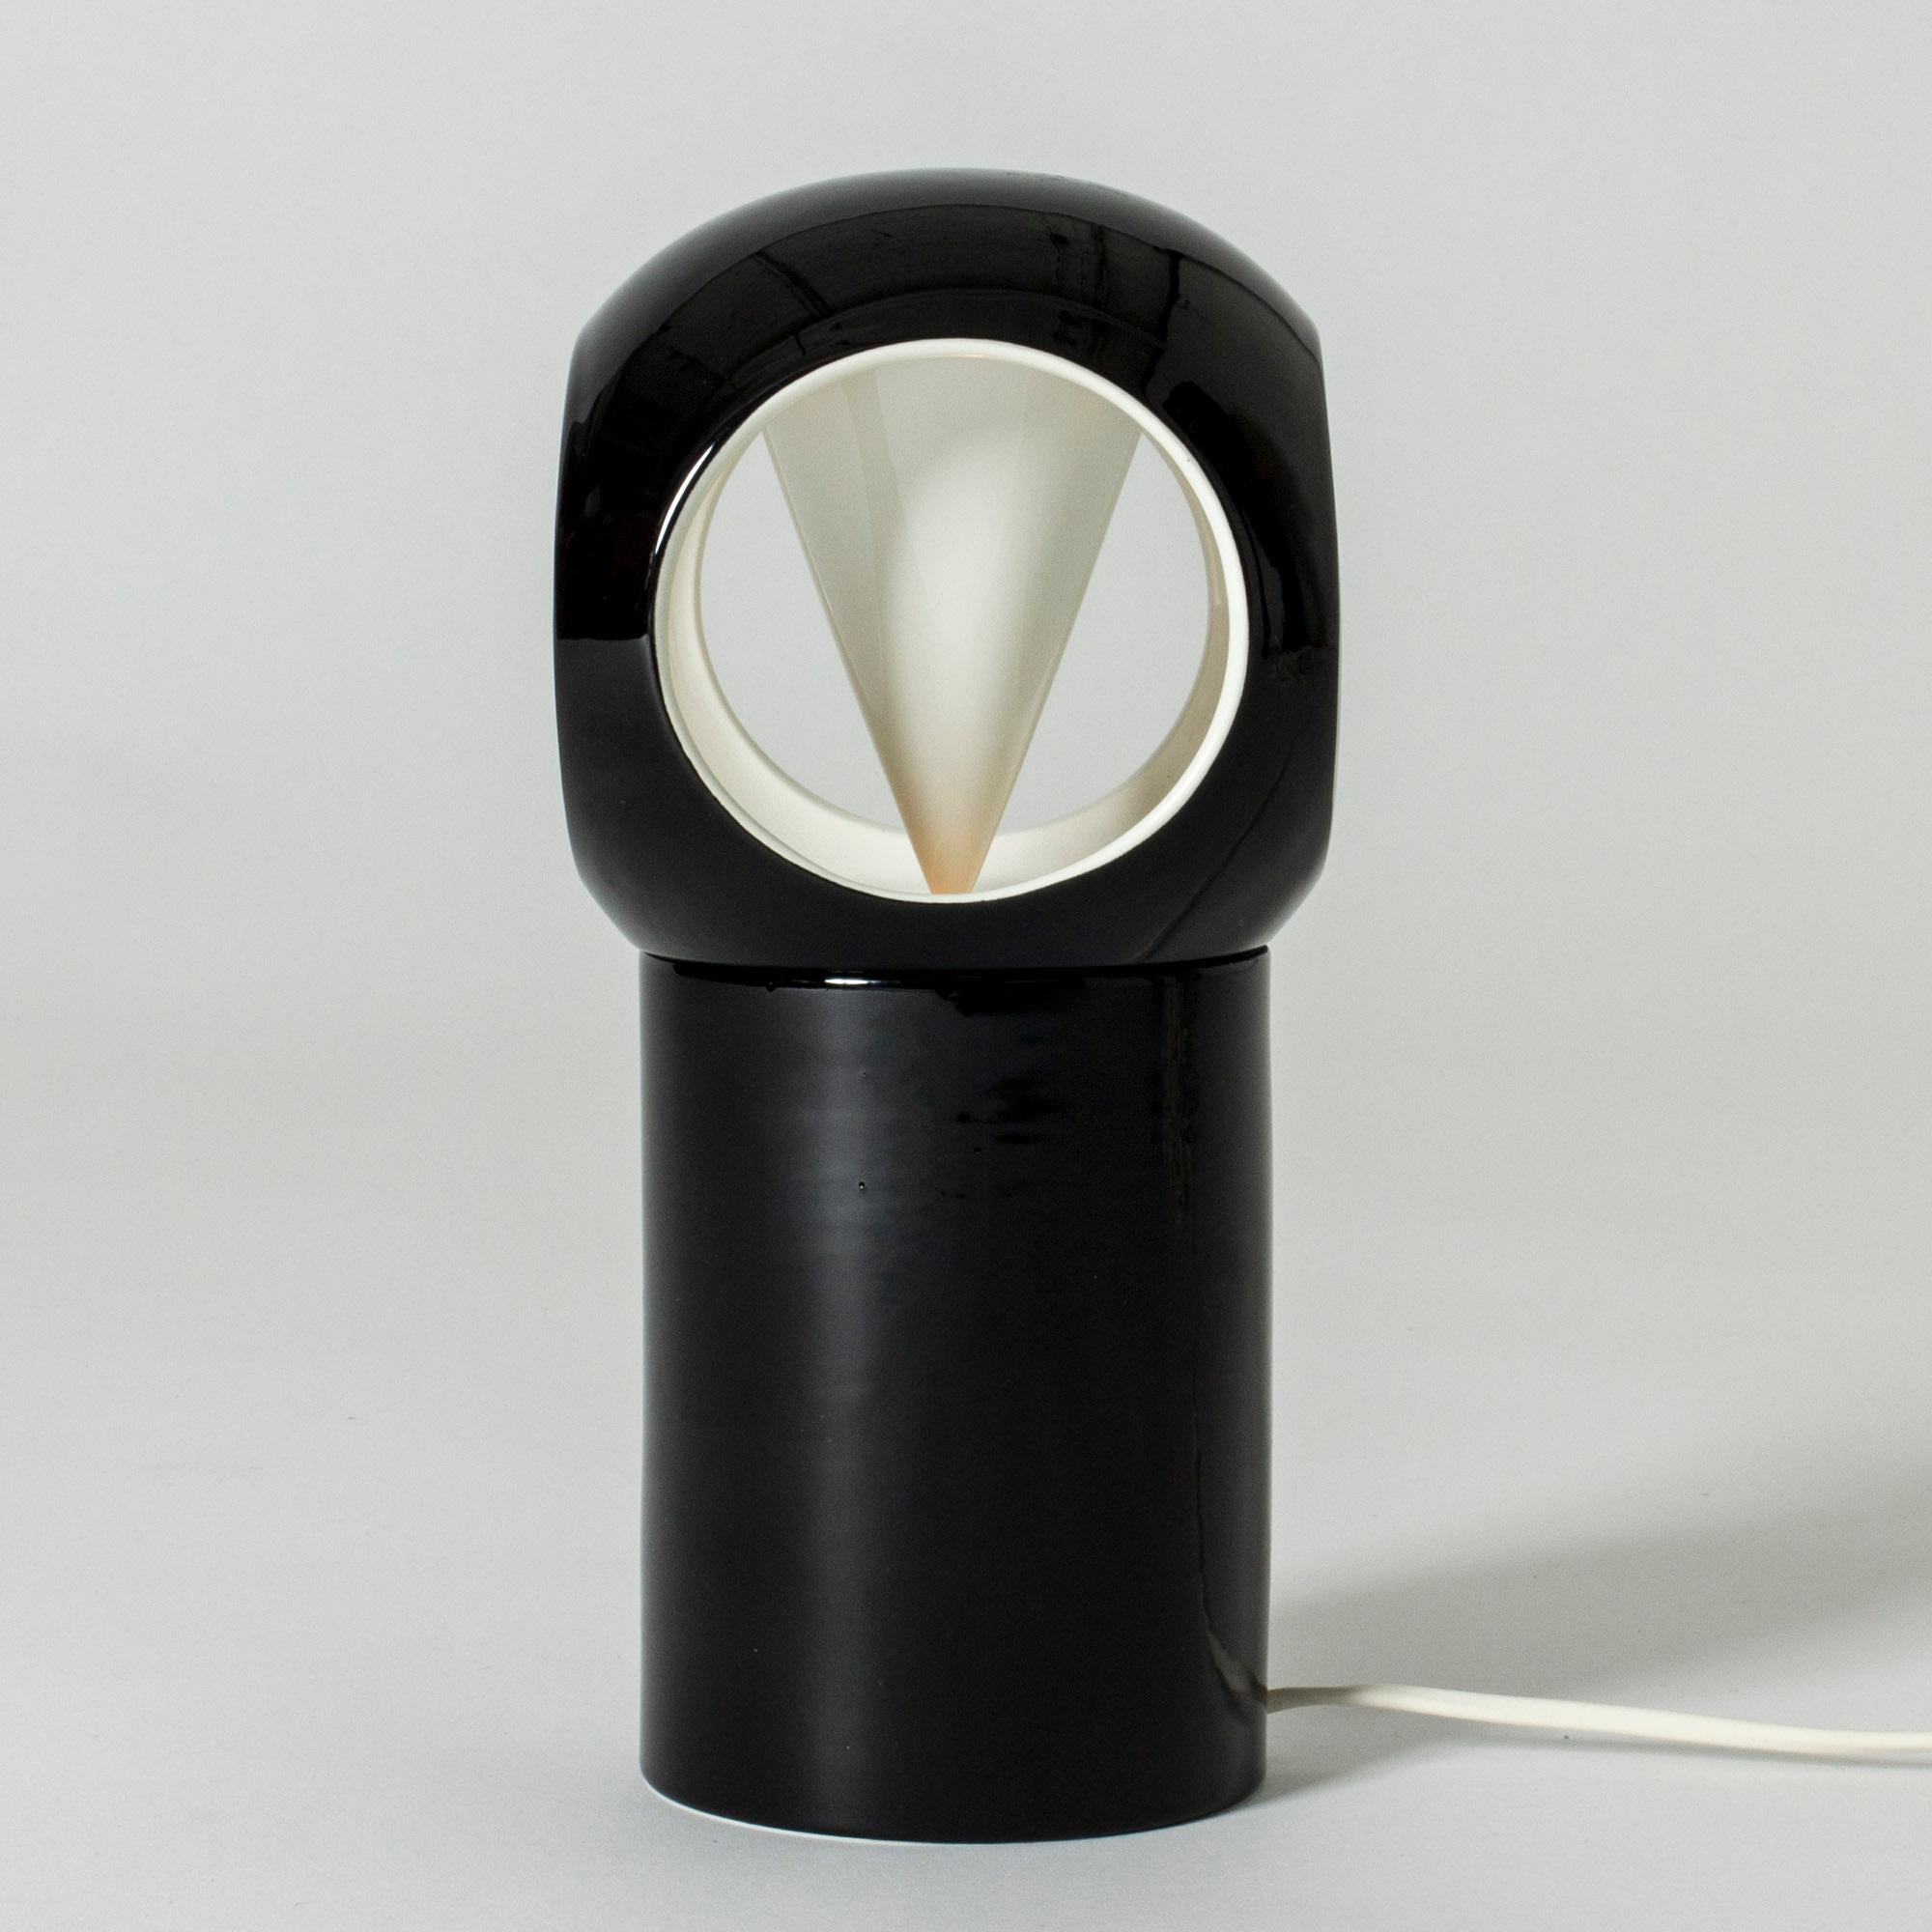 Remarquable lampe de table de Carl-Harry Stålhane, fabriquée en grès. Glacé en contraste noir et blanc. L'aspect est différent selon l'angle, les ouvertures dans l'abat-jour lui donnent un aspect de hibou.

Carl-Harry Stålhane était l'une des